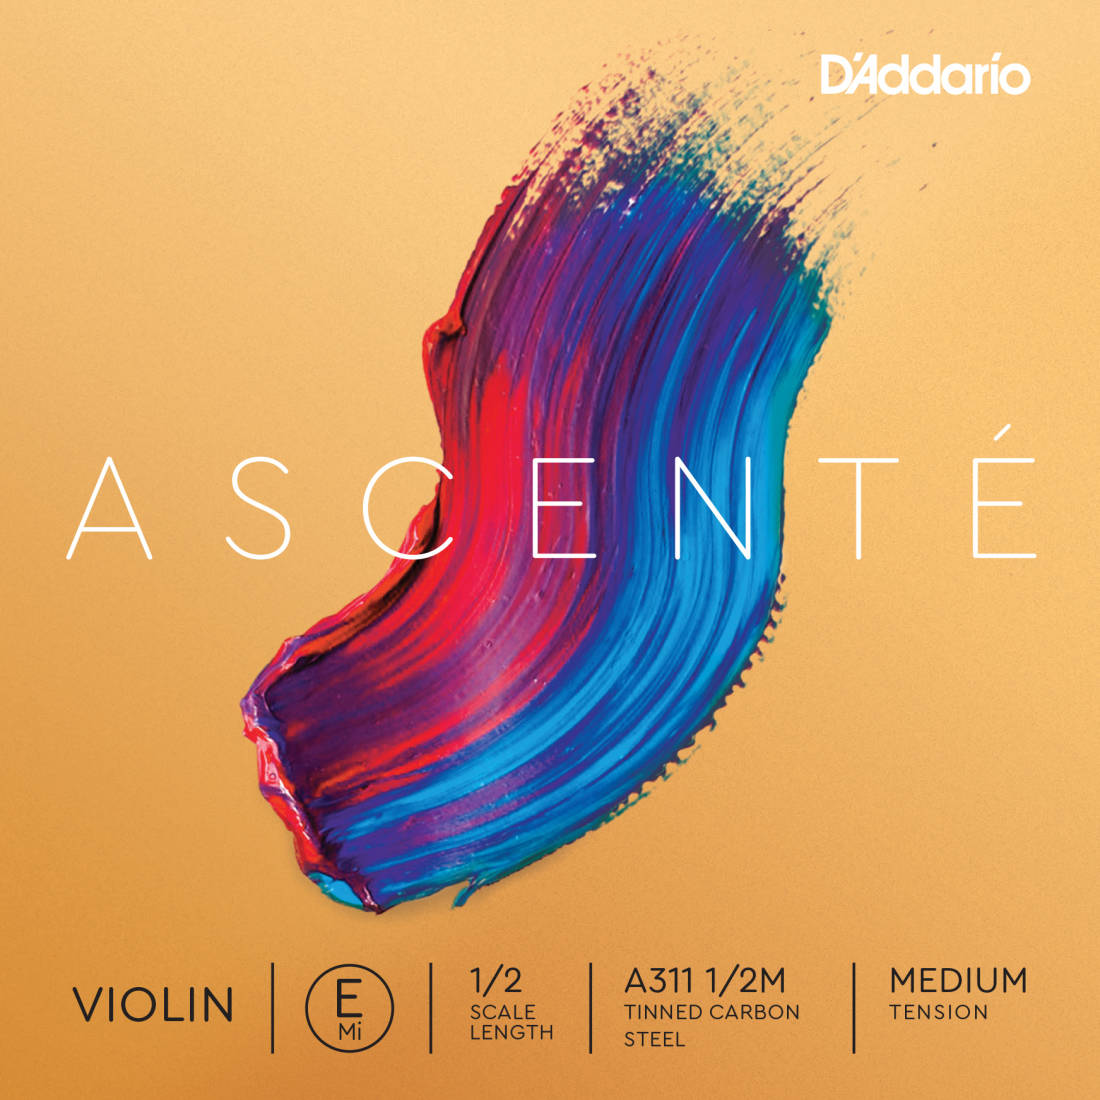 Ascente Violin Medium Tension Single E String, 1/2